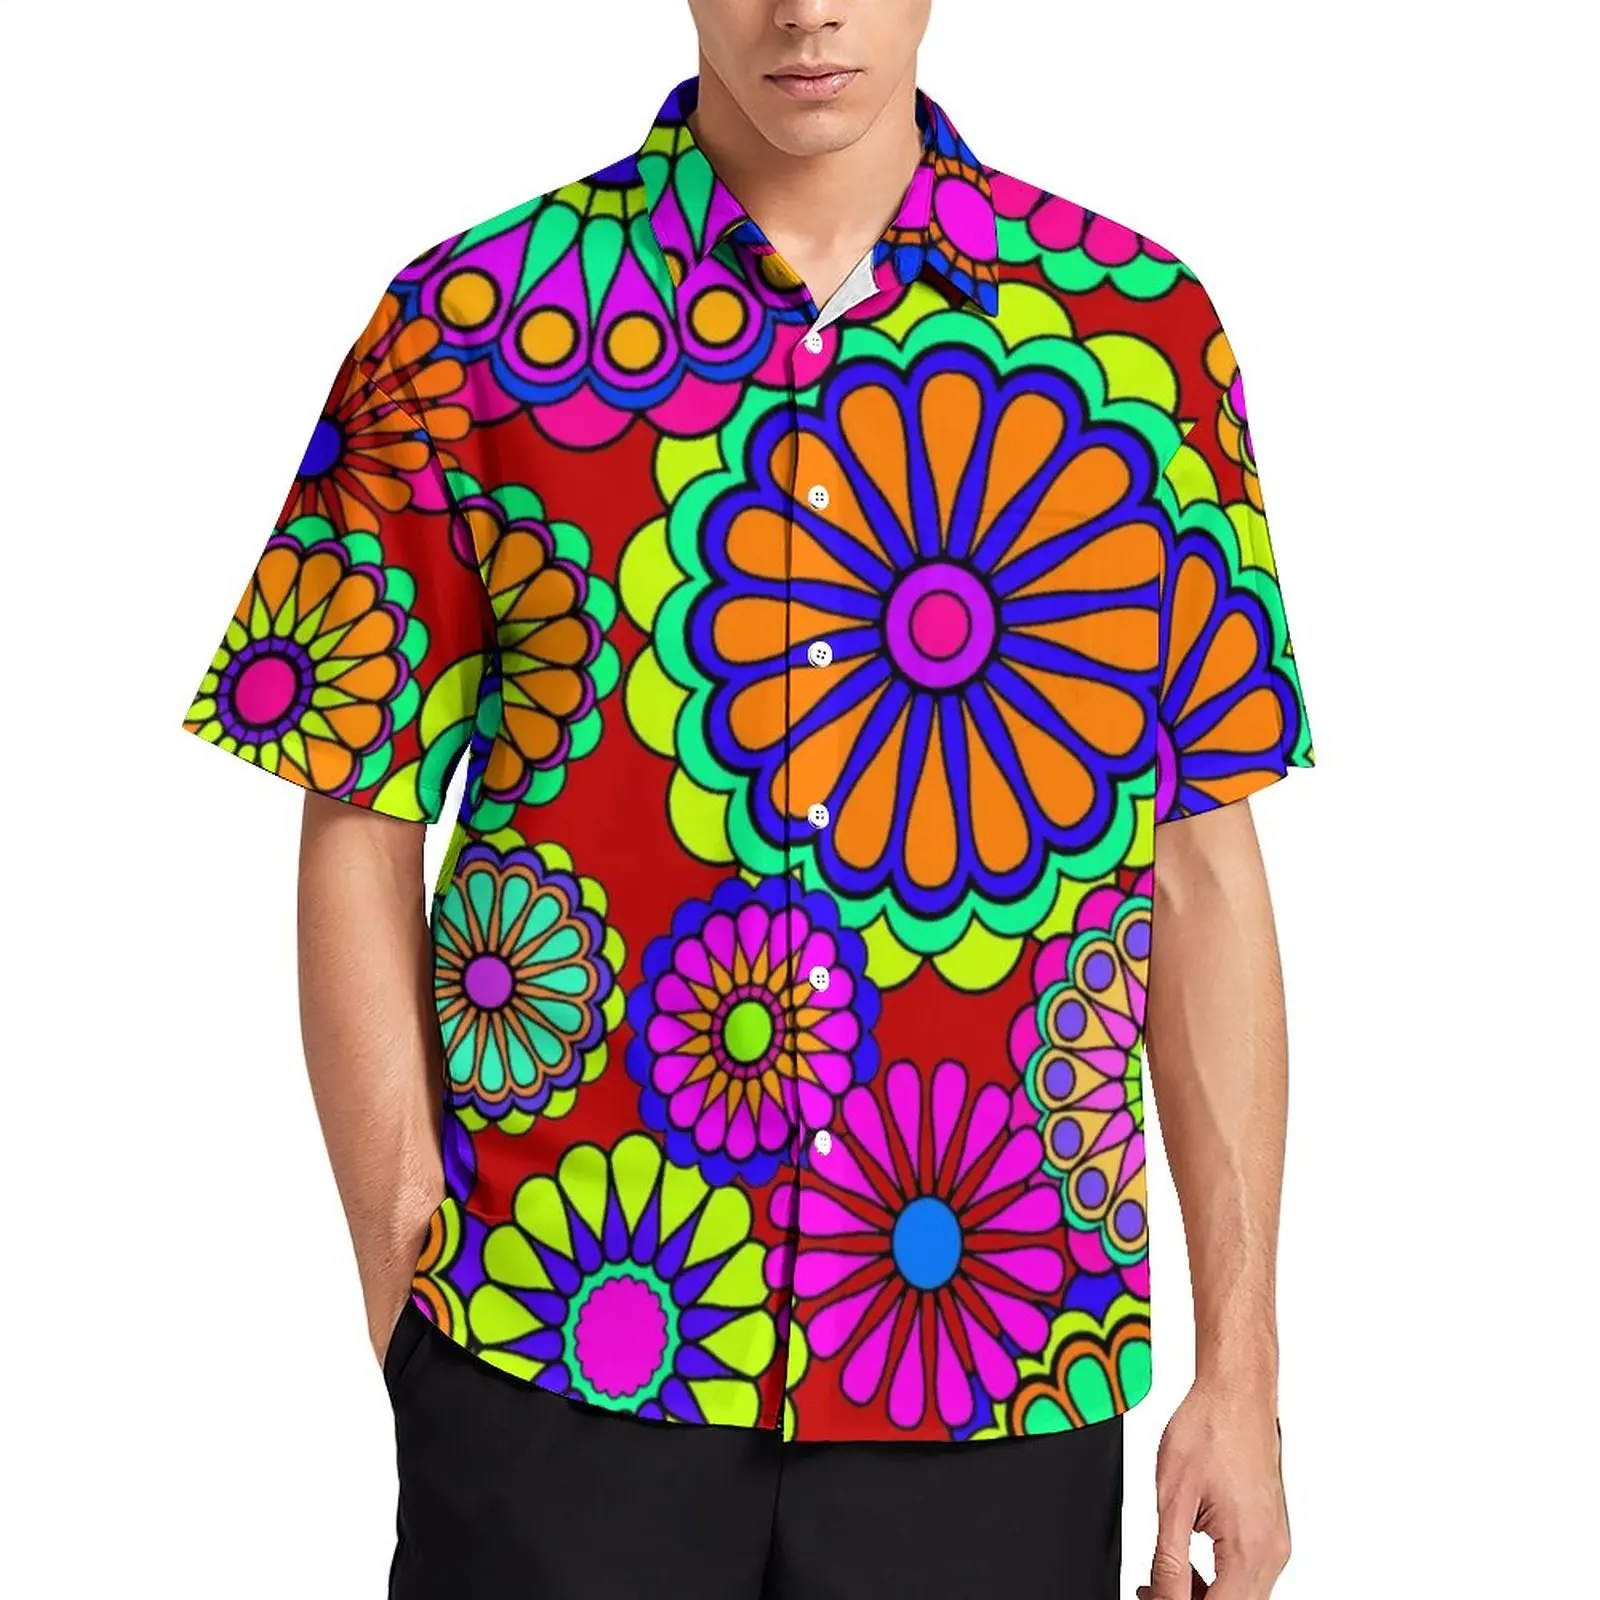 

Красочная рубашка Peace в стиле ретро для отпуска, мужские повседневные рубашки в стиле хиппи с цветами, гавайская дизайнерская забавная блузка большого размера с коротким рукавом, подарок